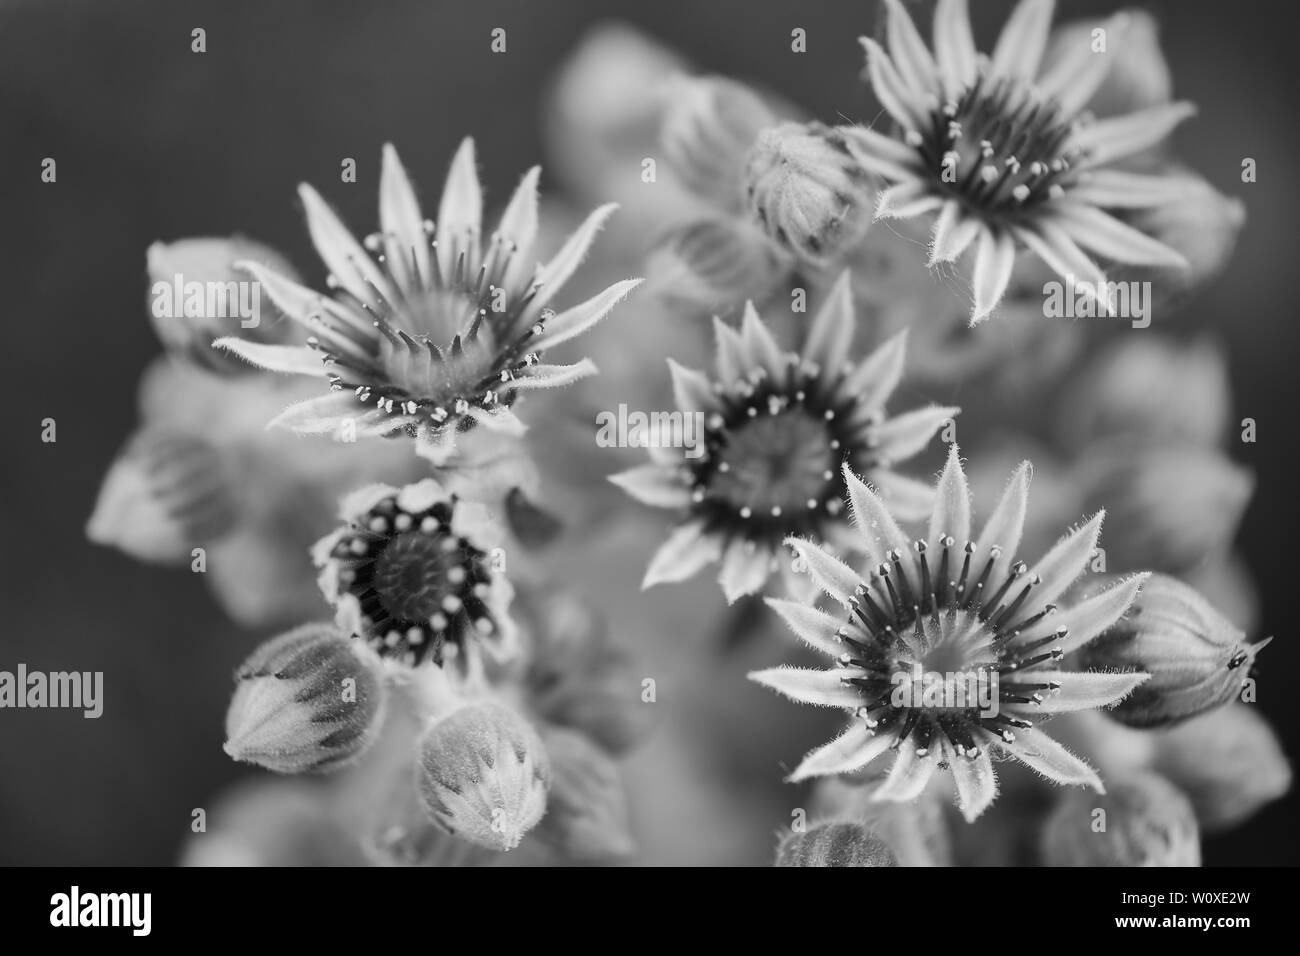 Makro Foto der blühenden Sempervivum saftig, auf der rechten Seite auf den niedrigsten Blume, schwarz-weiss Bild konzentrieren Stockfoto